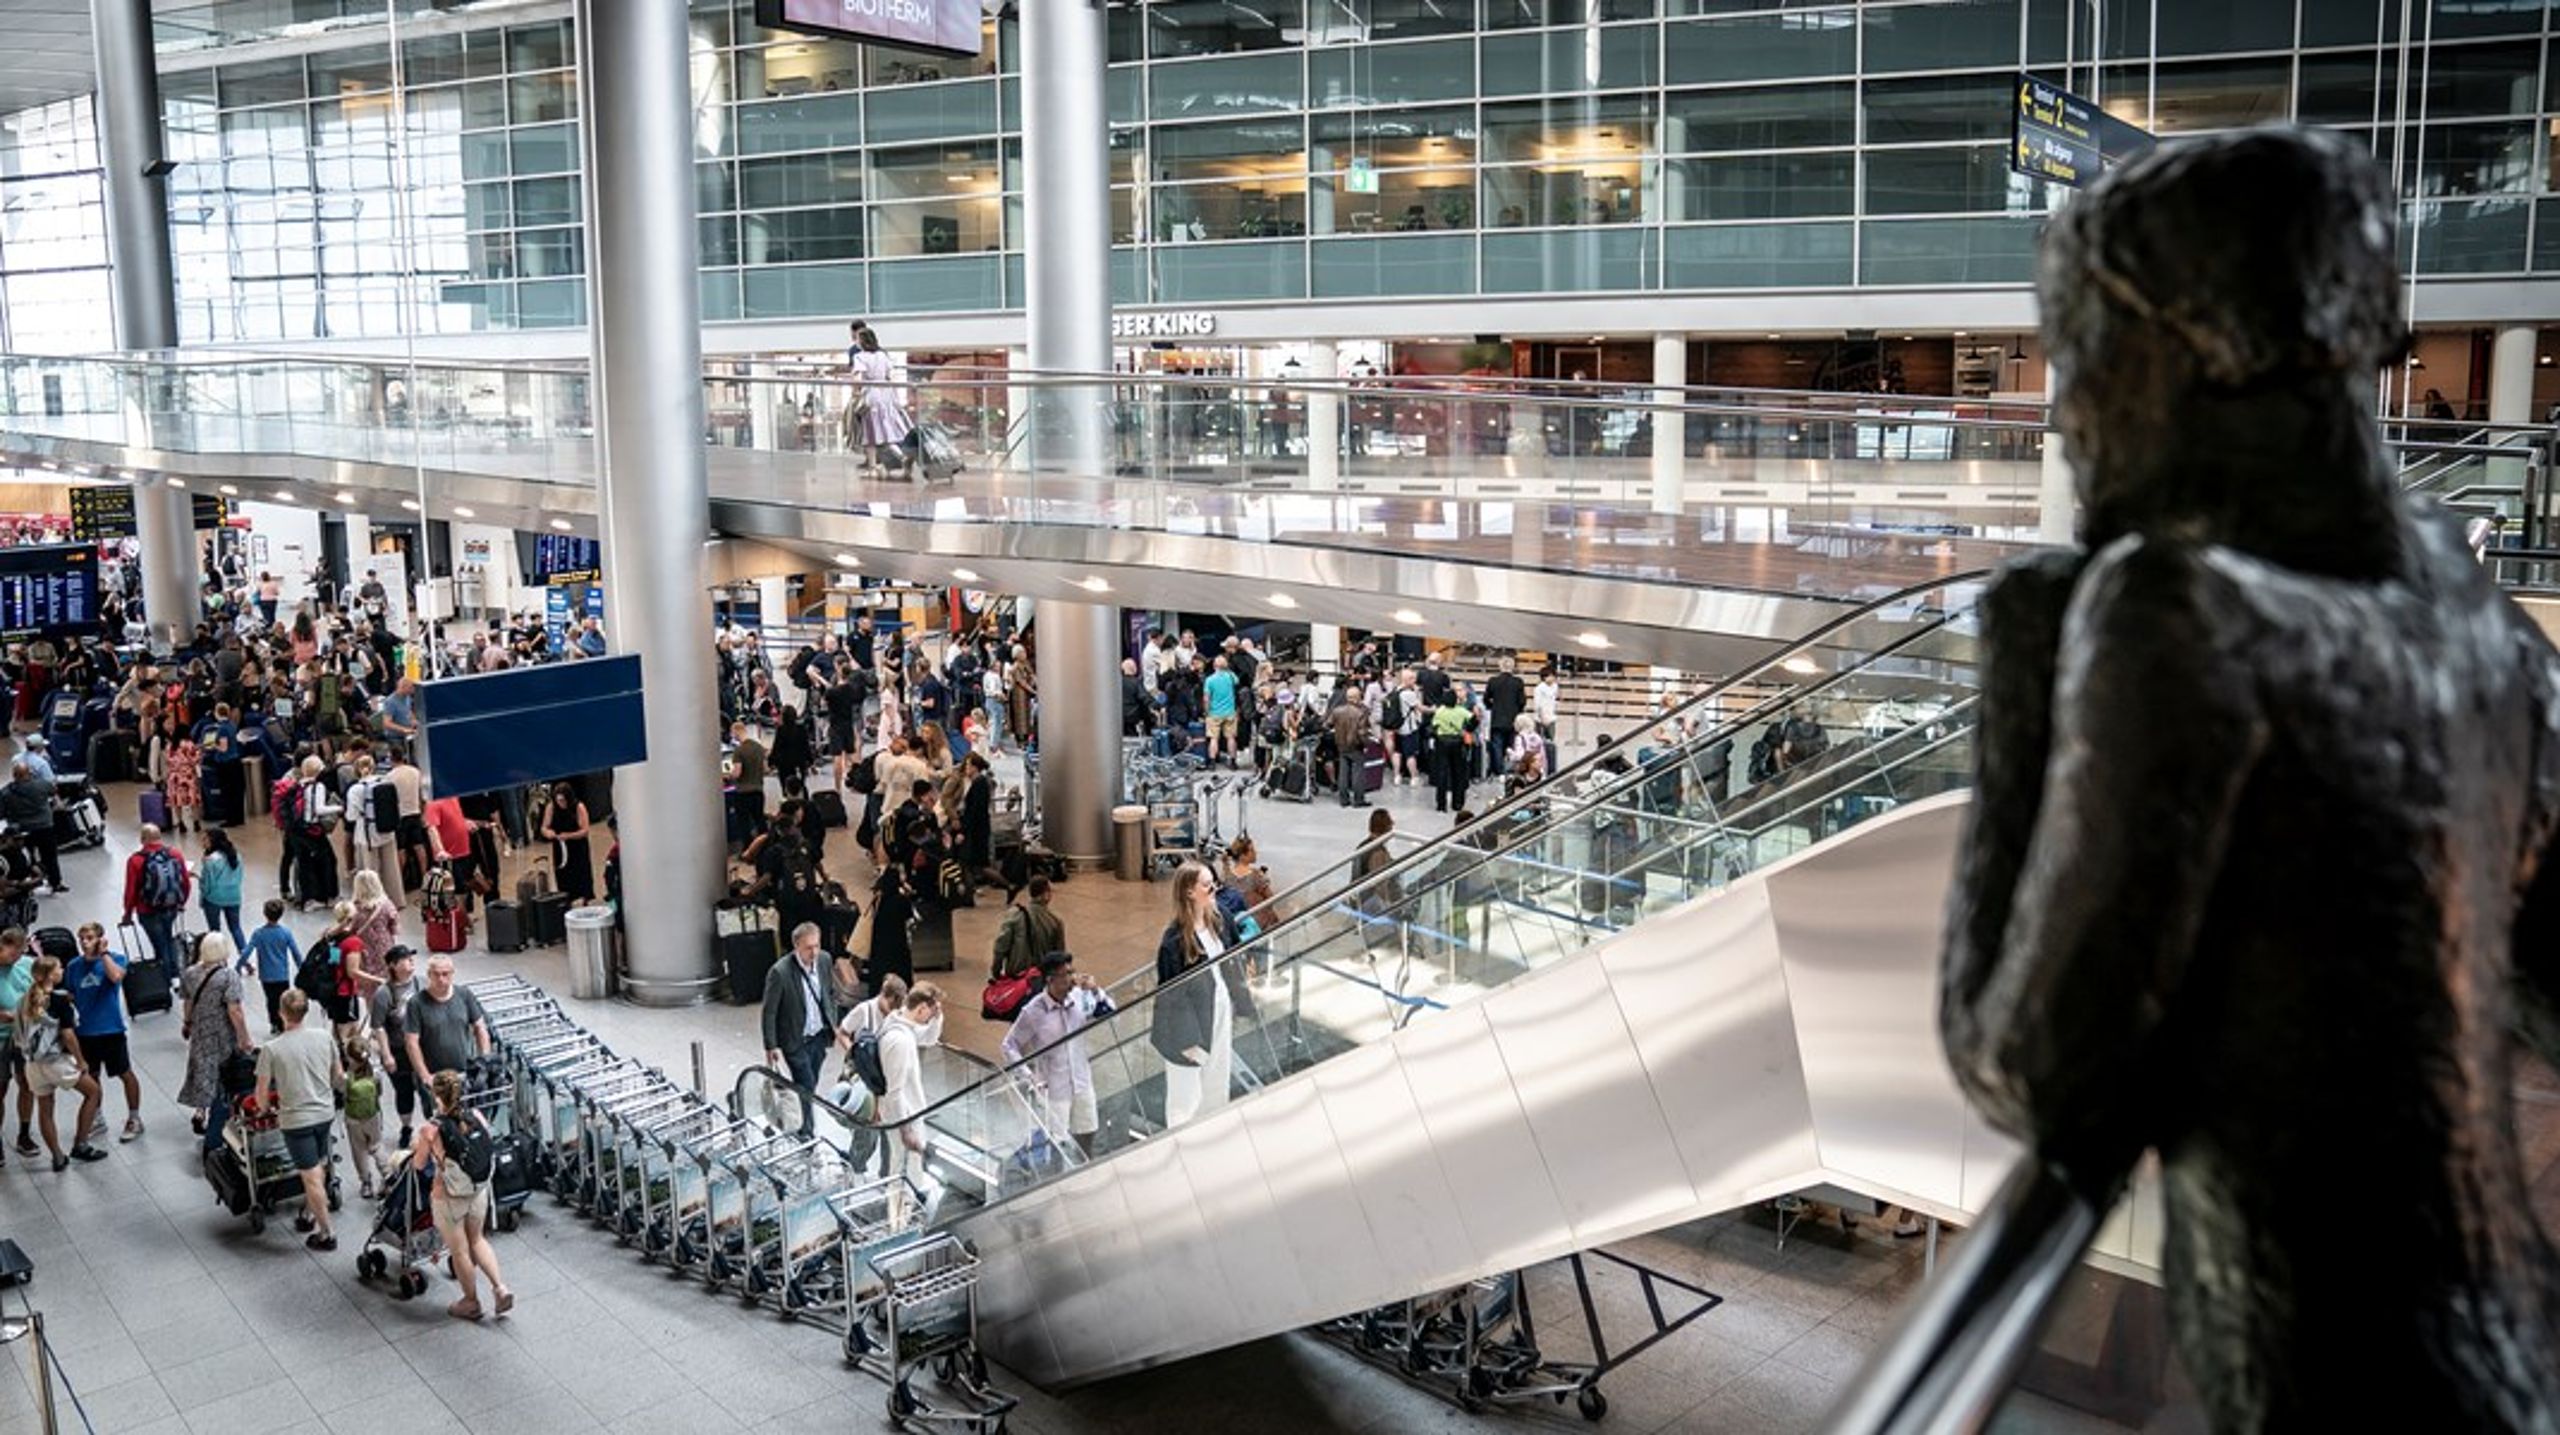 "Københavns Lufthavne er hårdt ramt økonomisk af konsekvenserne efter covid-19. Desværre har det haft den konsekvens, at min stilling som cheføkonom er blevet nedlagt," skriver&nbsp;Thomas Thessen i et opslag på LinkedIn.